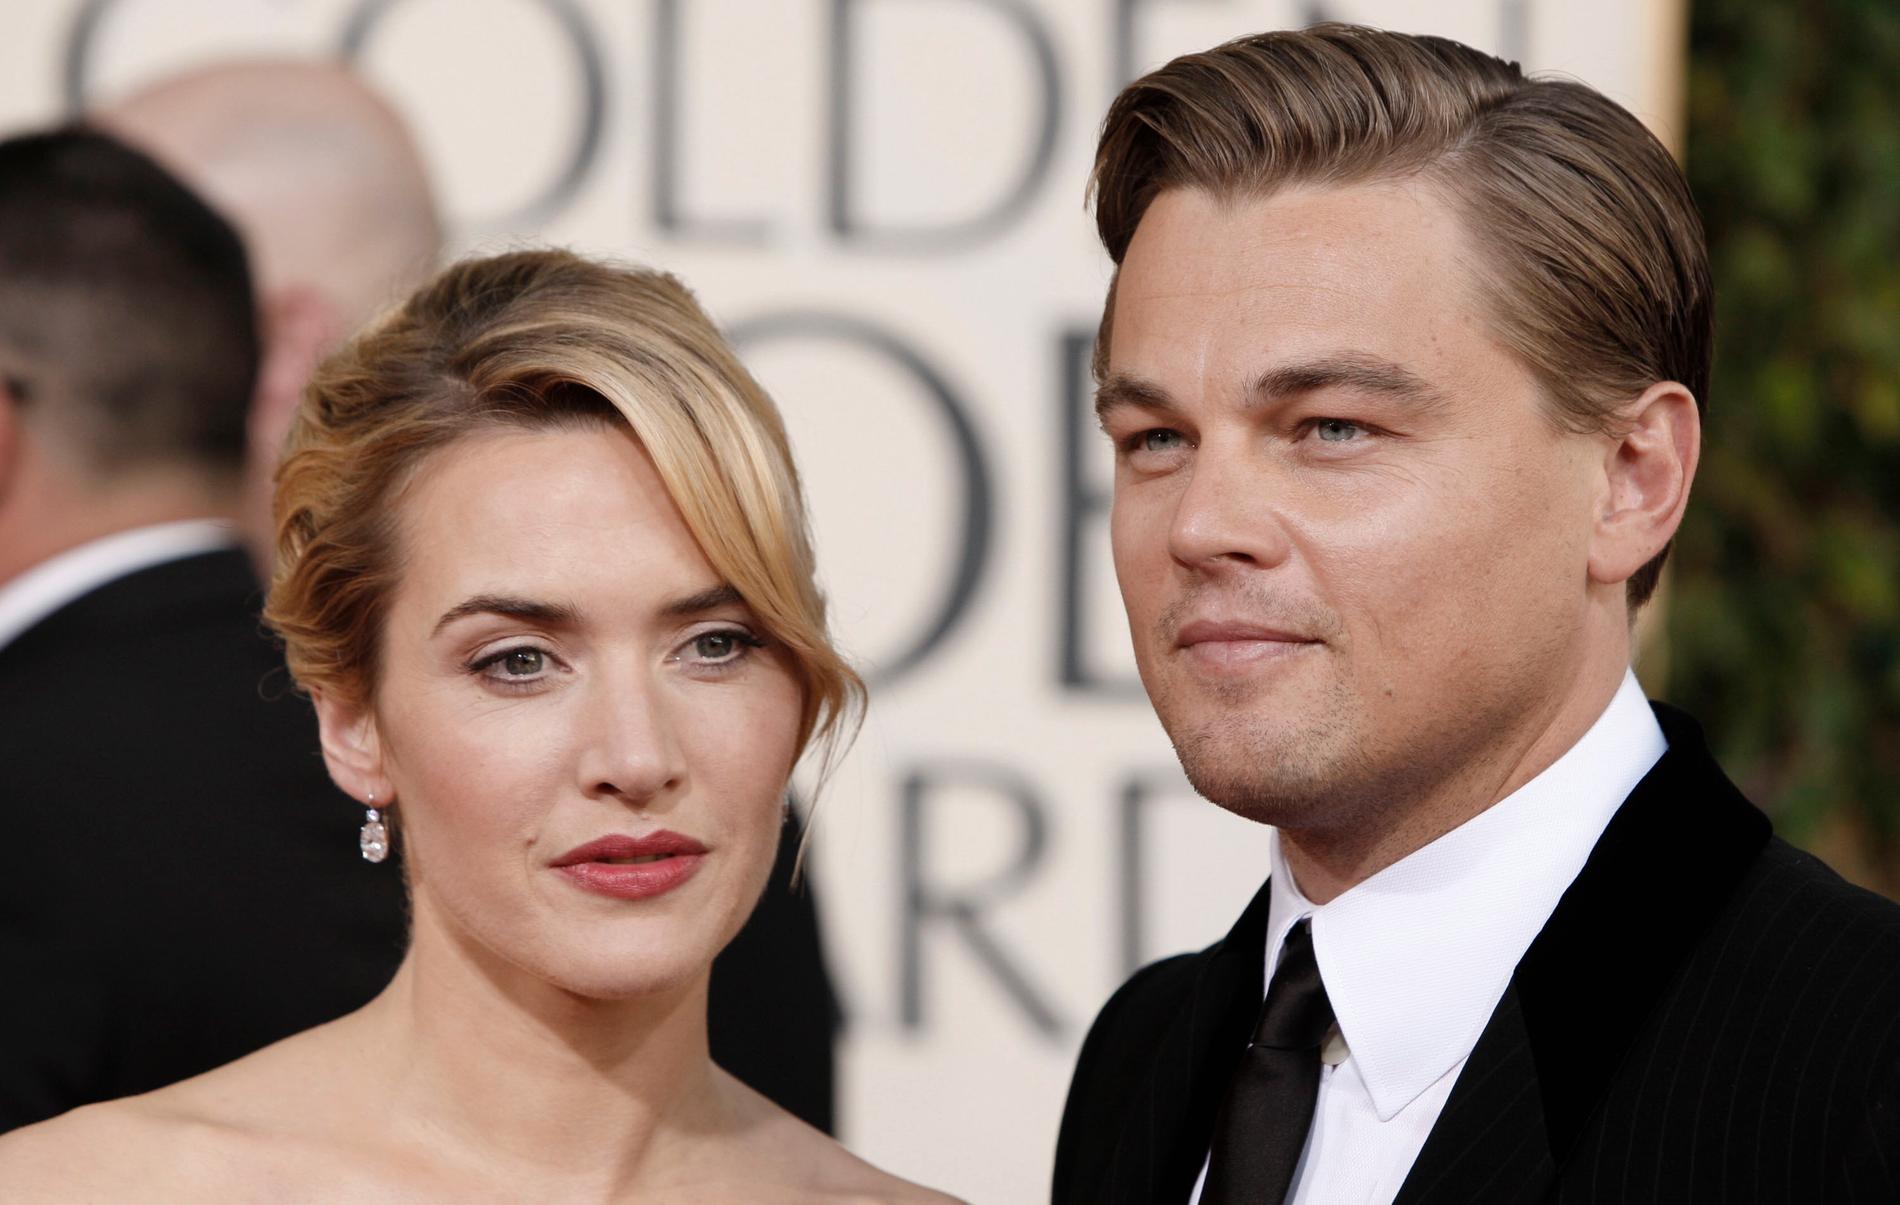 Kate Winslet och Leonardo DiCaprio spelade huvudrollerna i filmen "Titanic". Men det var nära att DiCaprio inte fick rollen när han inte ville provfilma. Arkivbild.